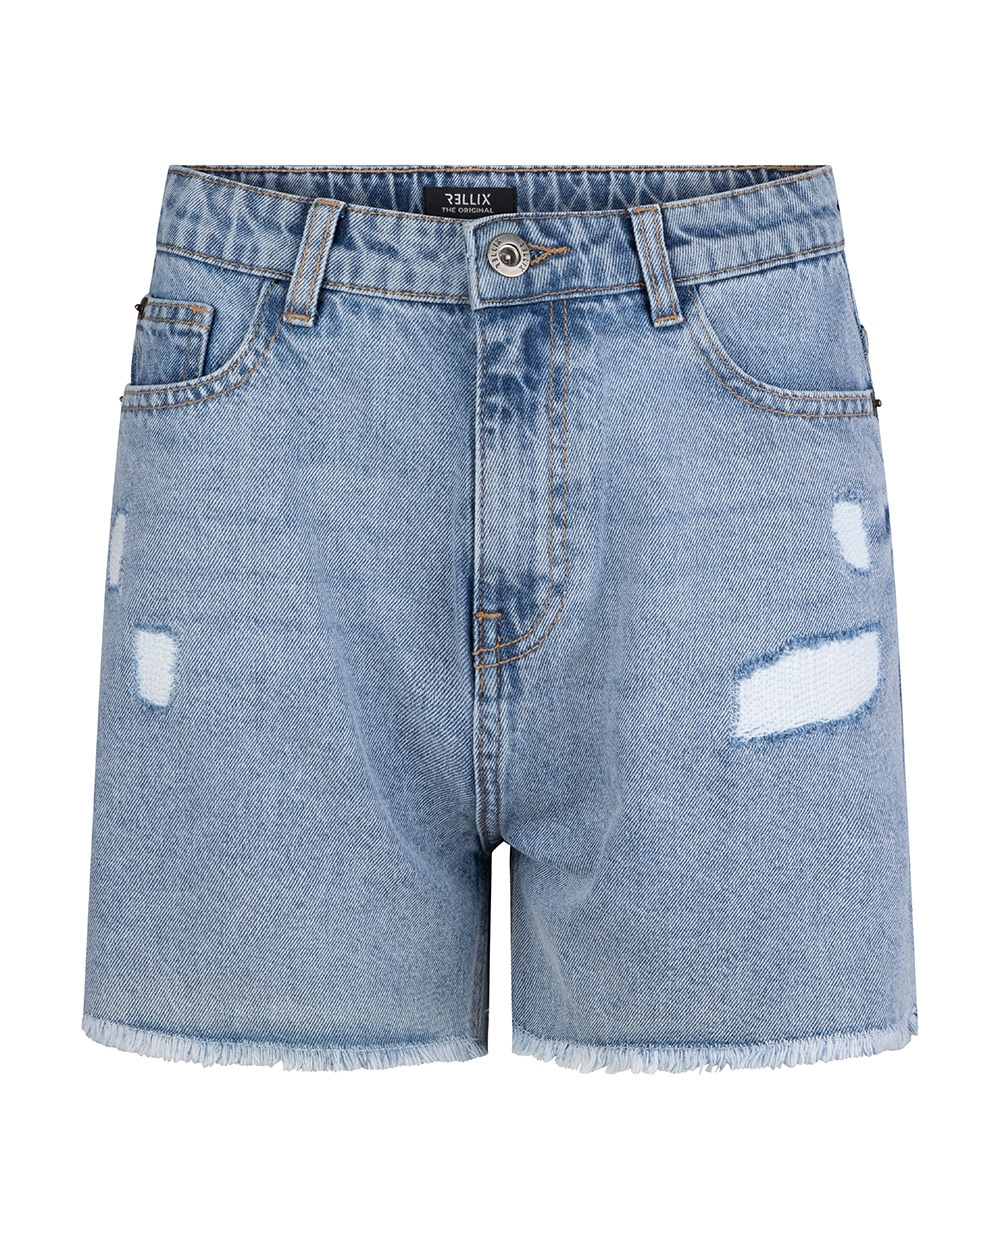 Meisjes jeans short - high waist - Light Denim